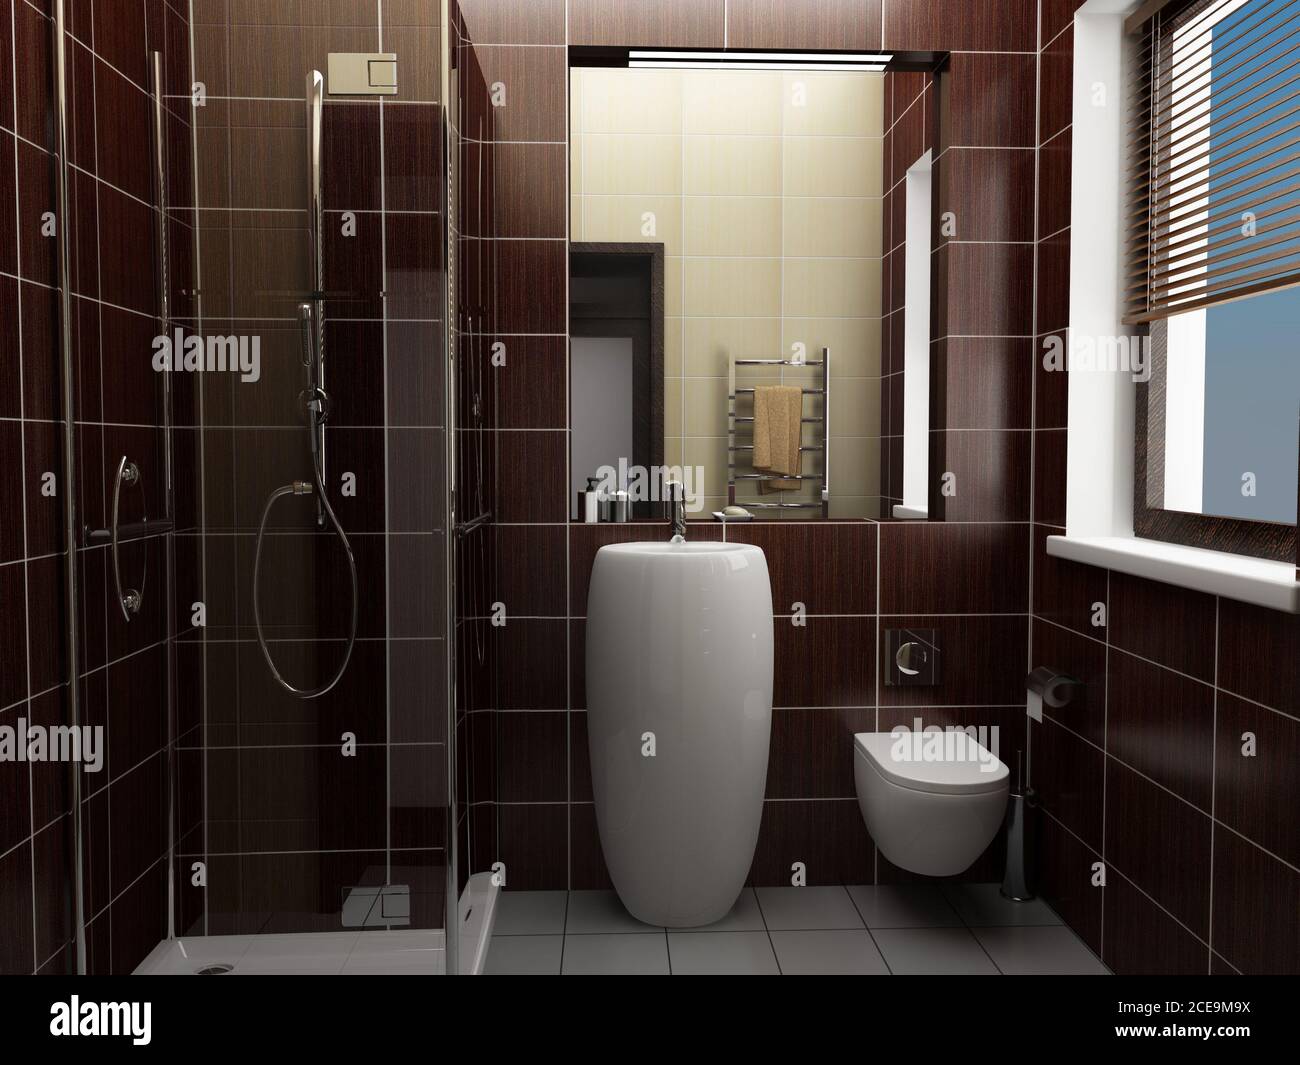 Moderno cuarto de baño con azulejos de color marrón Foto de stock